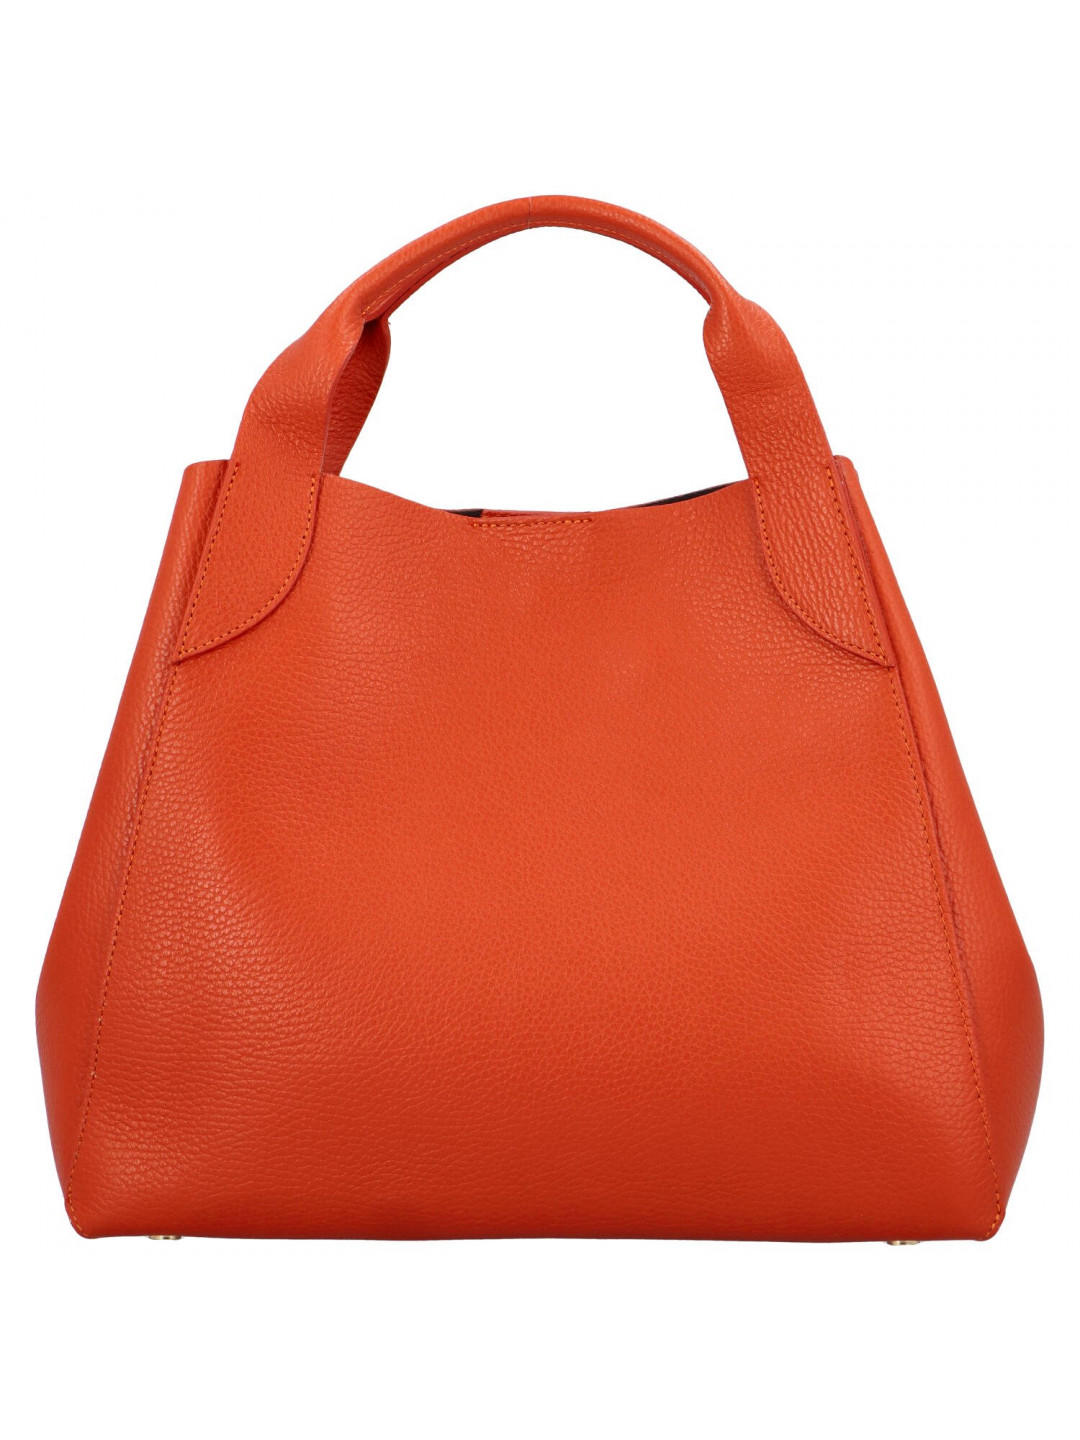 Dámská kožená kabelka do ruky oranžová – Delami Keriska